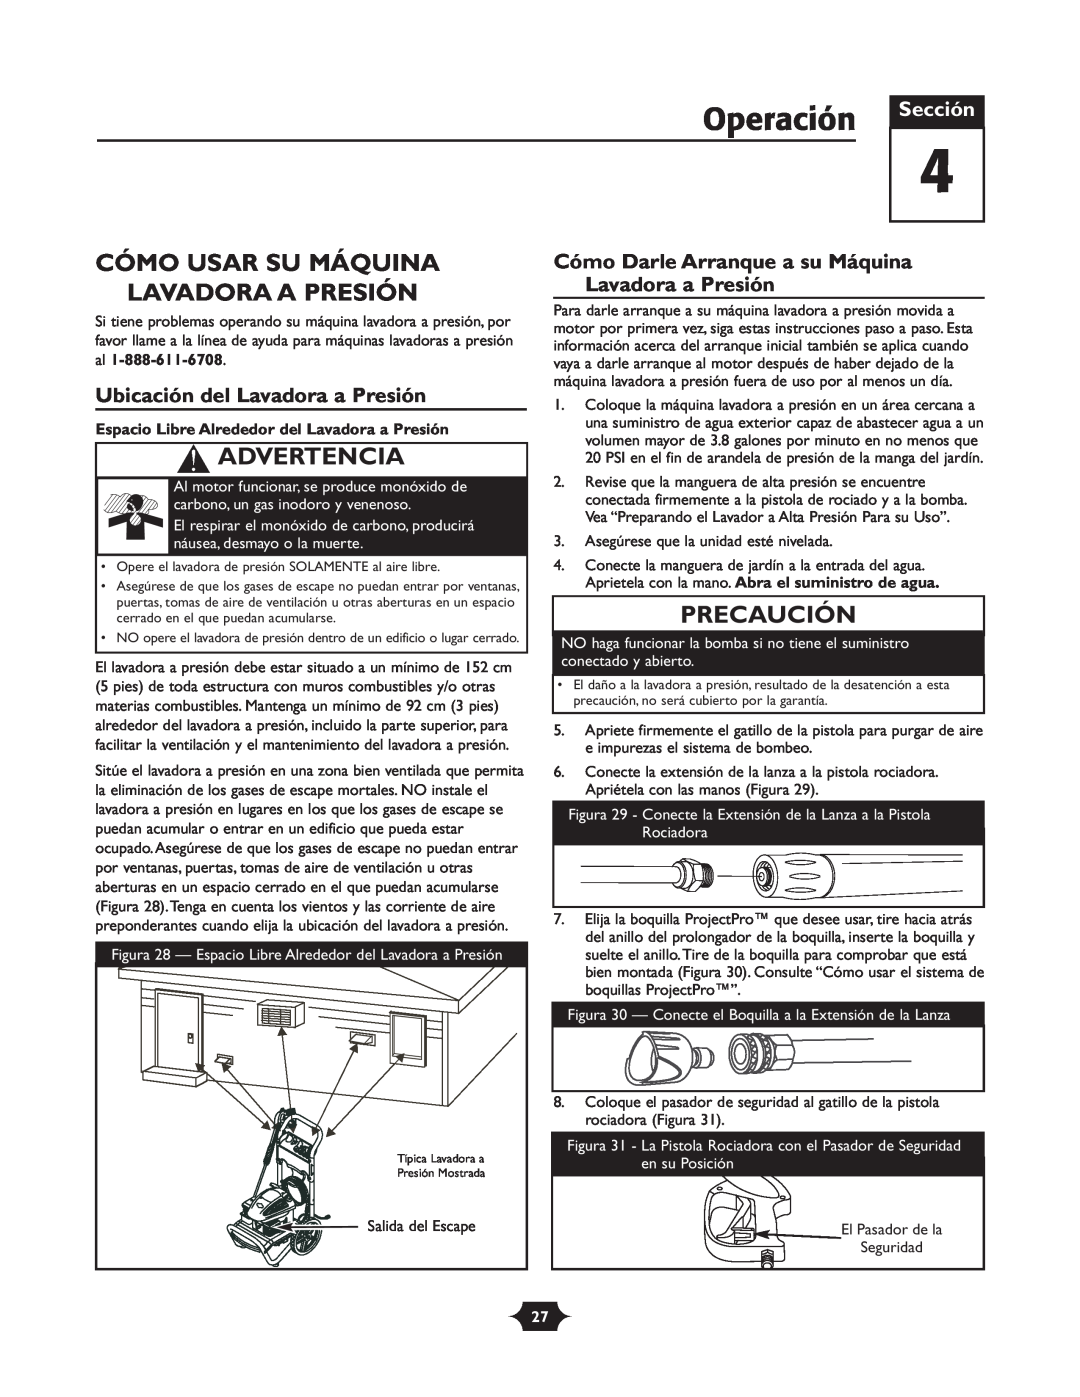 Troy-Bilt 020242-1 Operación, Cómo Usar Su Máquina Lavadora A Presión, Ubicación del Lavadora a Presión, Advertencia 